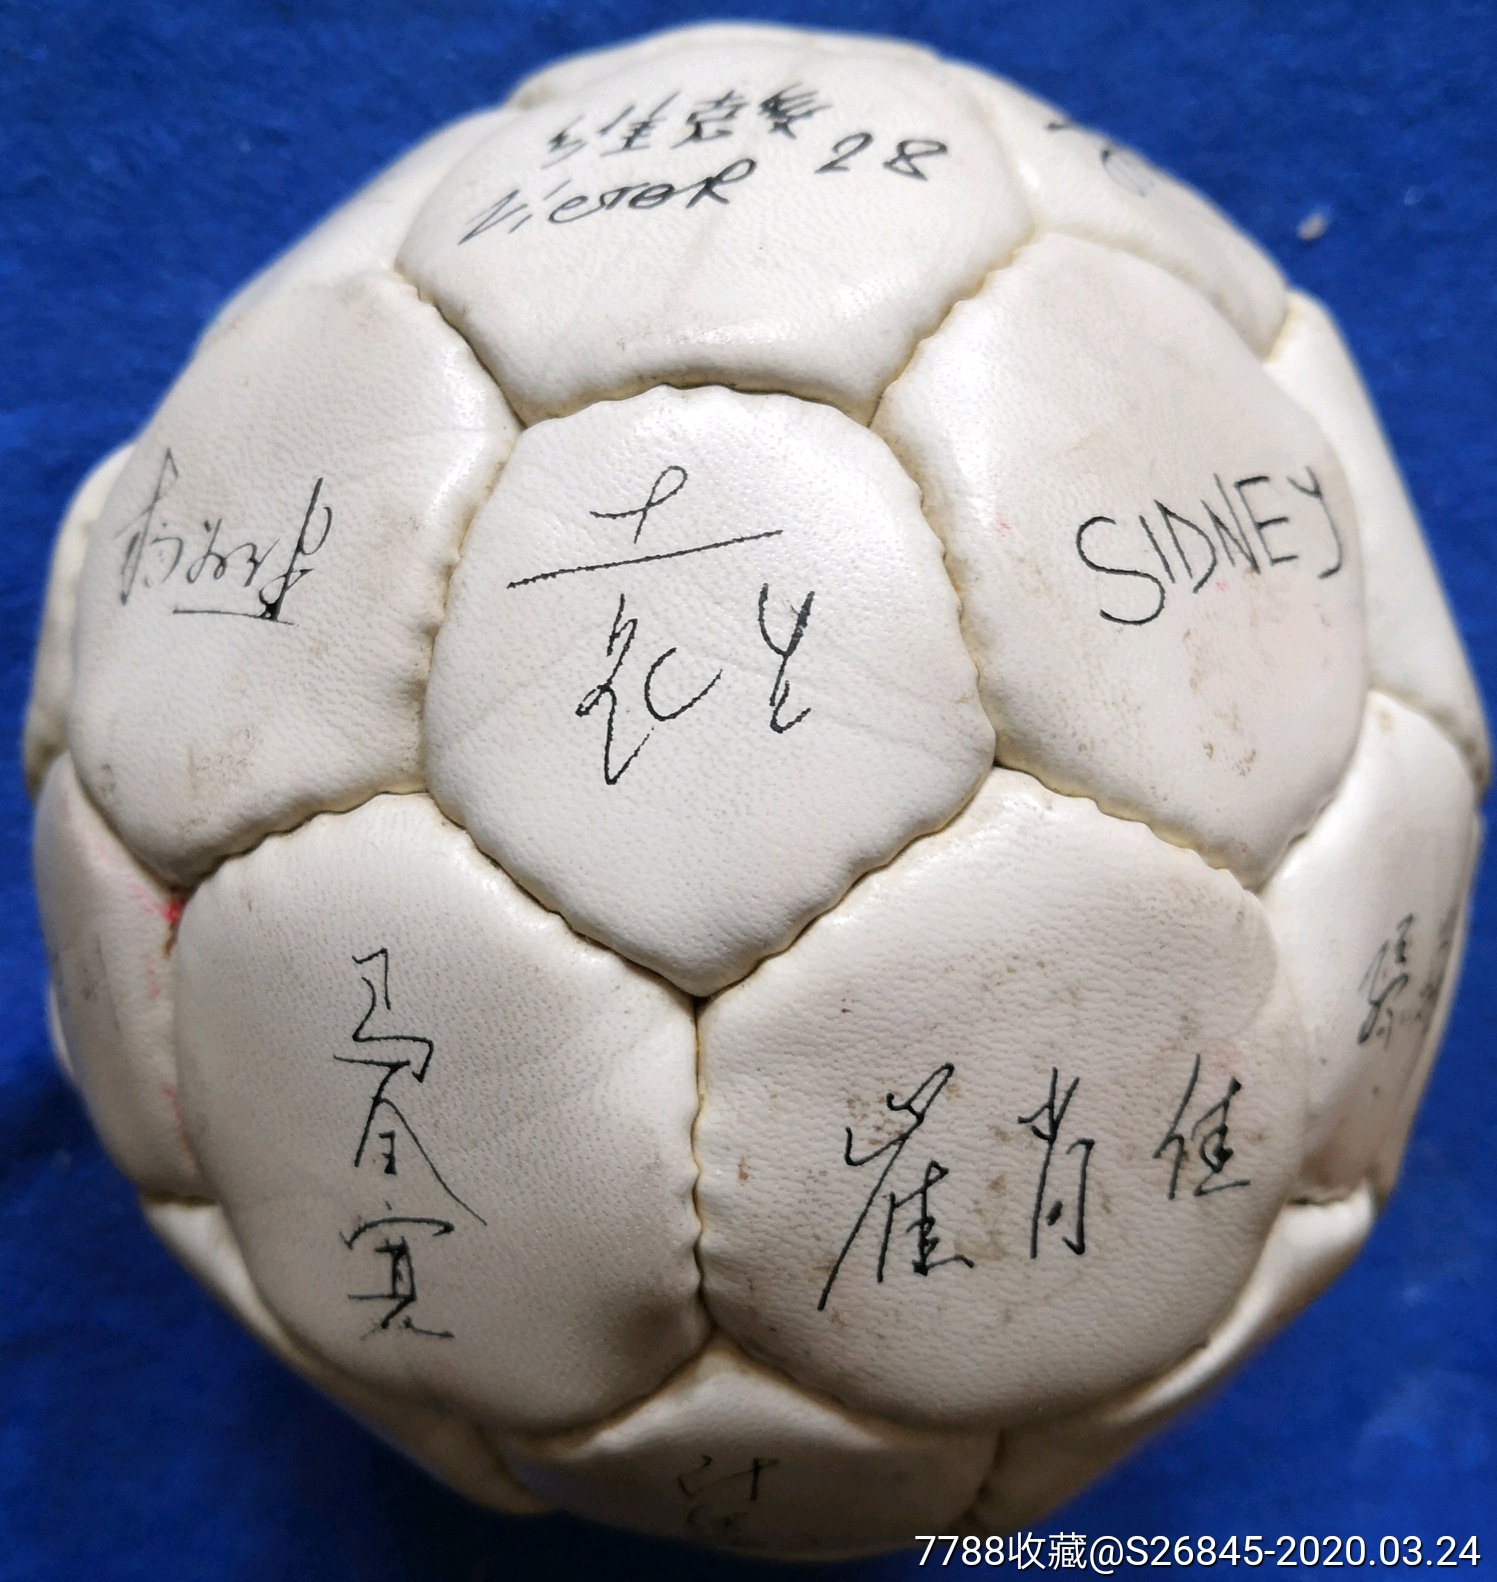 青岛海牛足球俱乐部:签名足球